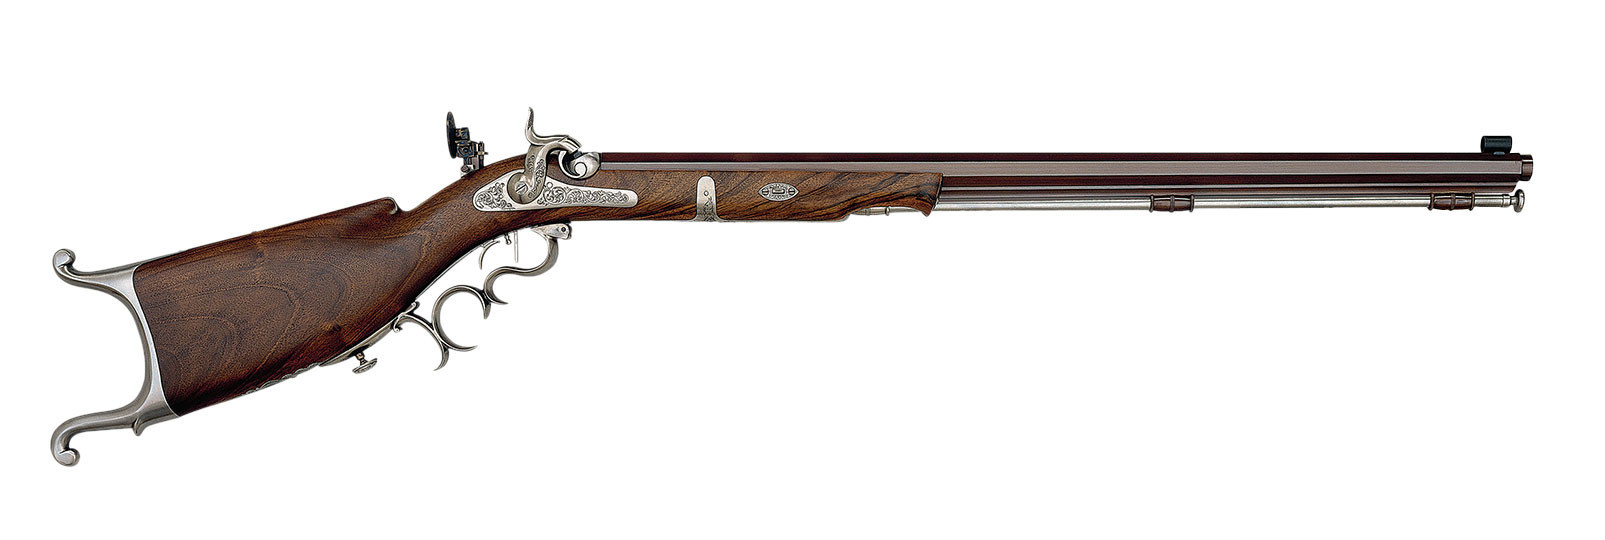 Waadtlander DELUXE Rifle